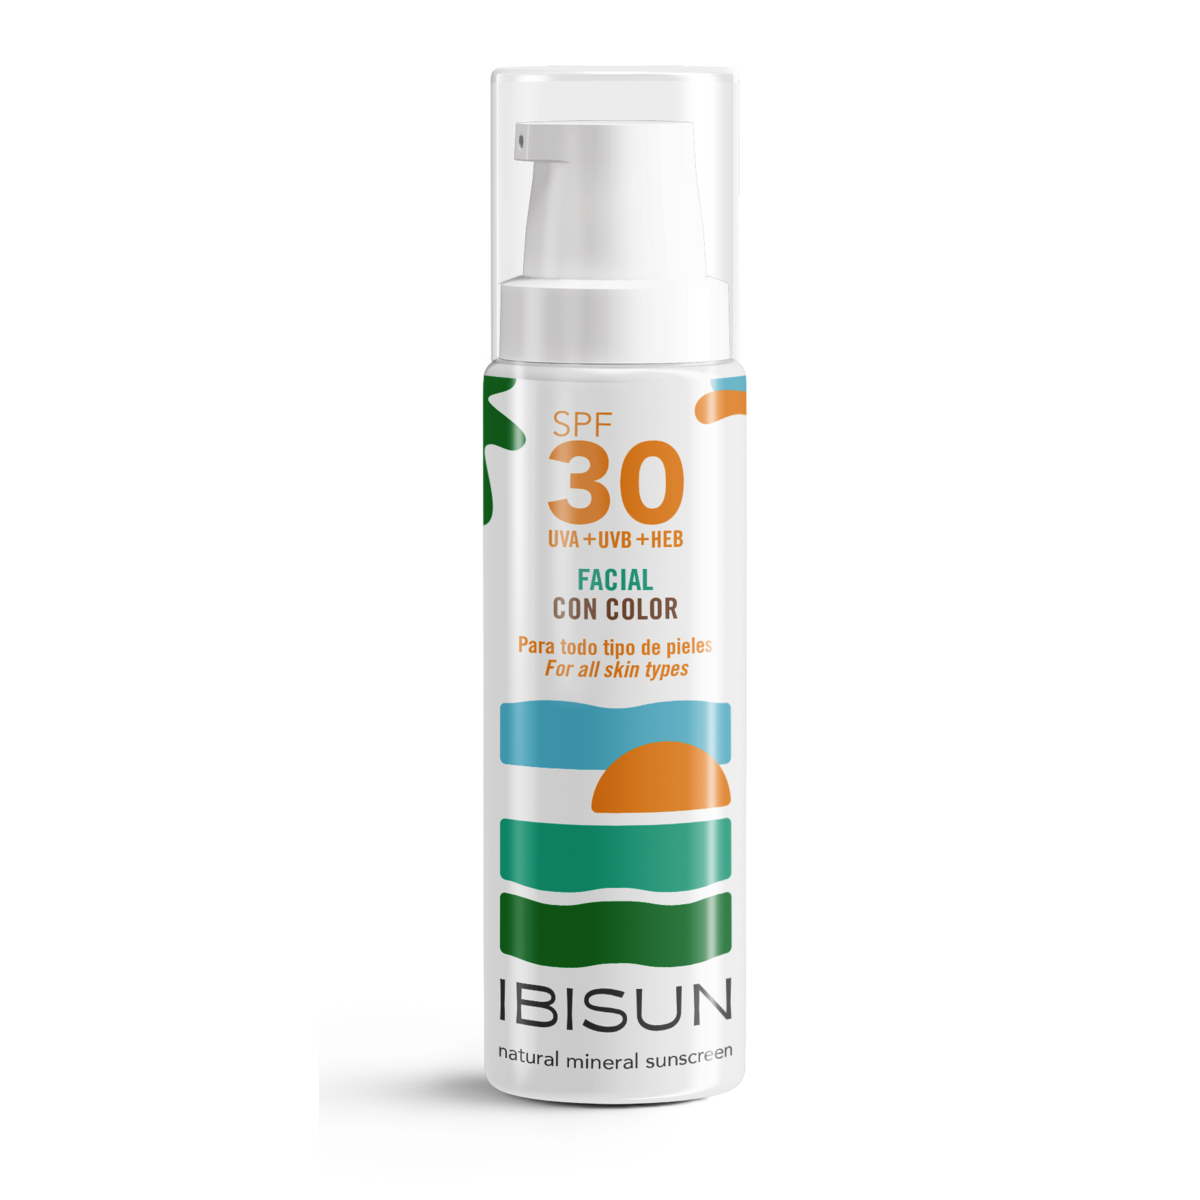 IBISUN | Getönte Sonnencreme für das Gesicht | l 30 LSF BIO VEGAN 50ml